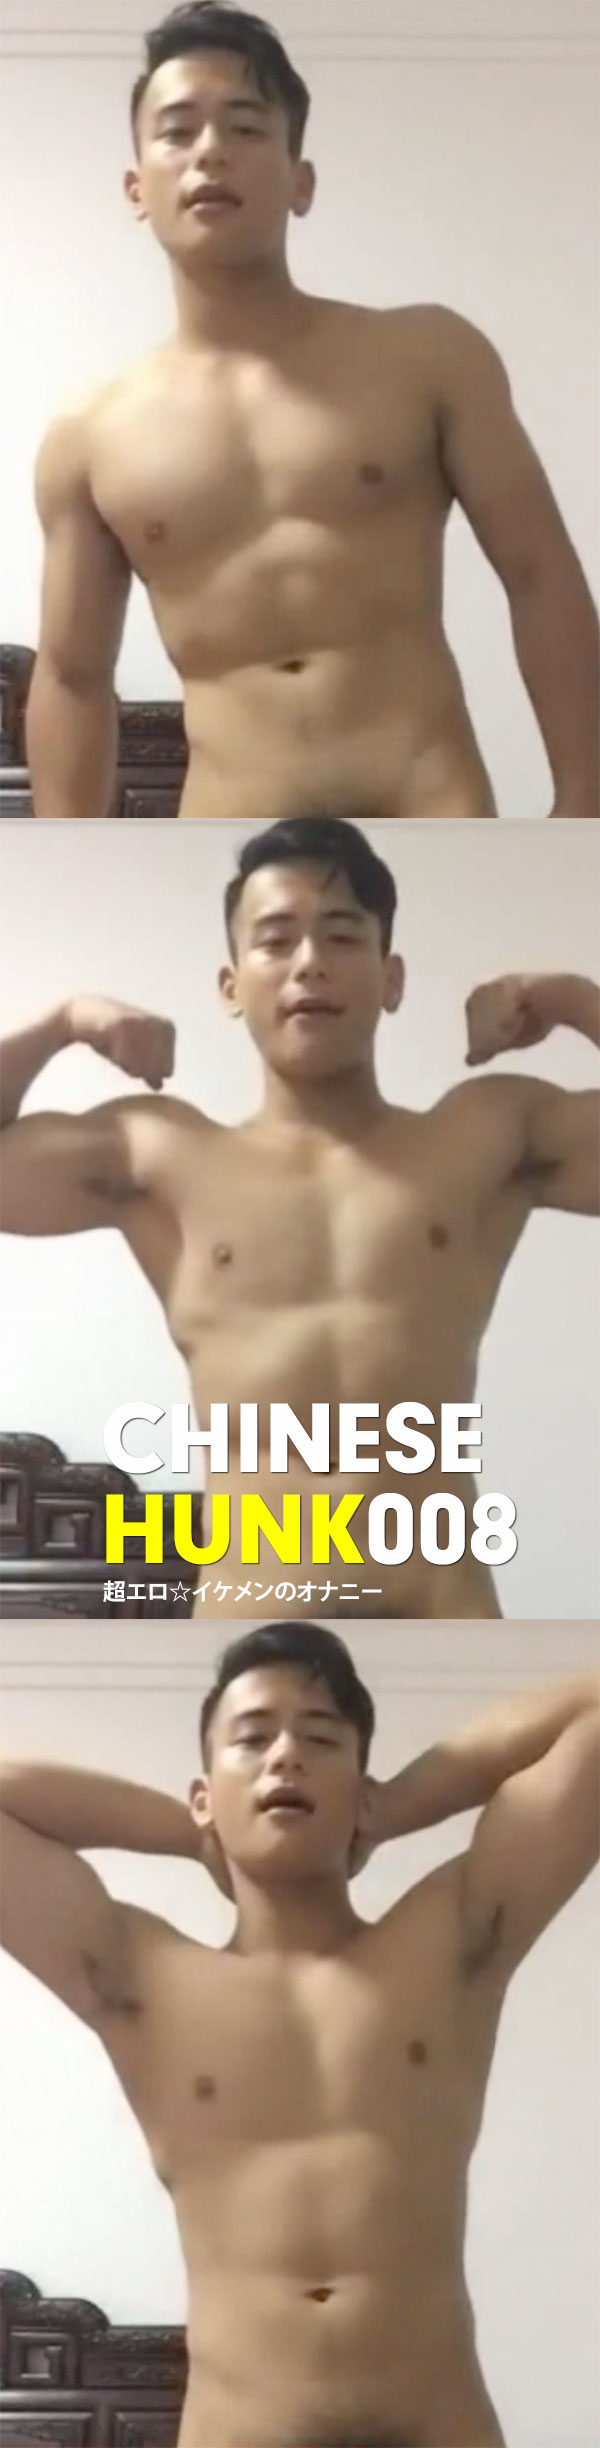 Chinese Hunk No.008